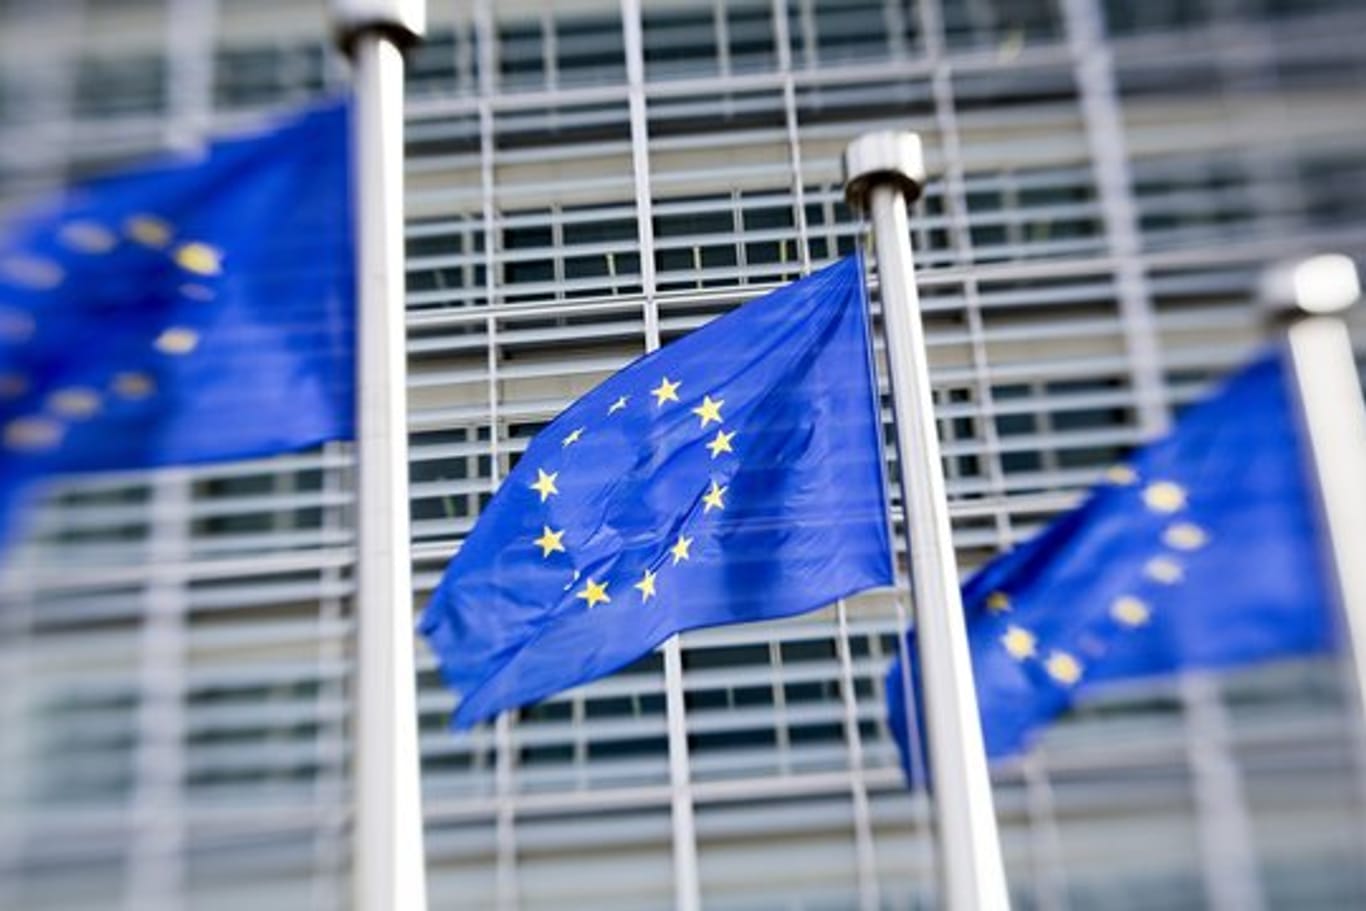 Mit dem Gesetzesvorschlag reagiert die EU-Kommission auf Enthüllungen wie die sogenannten Panama Papers, Luxleaks oder den Datenskandal um Facebook und Cambridge Analytica.